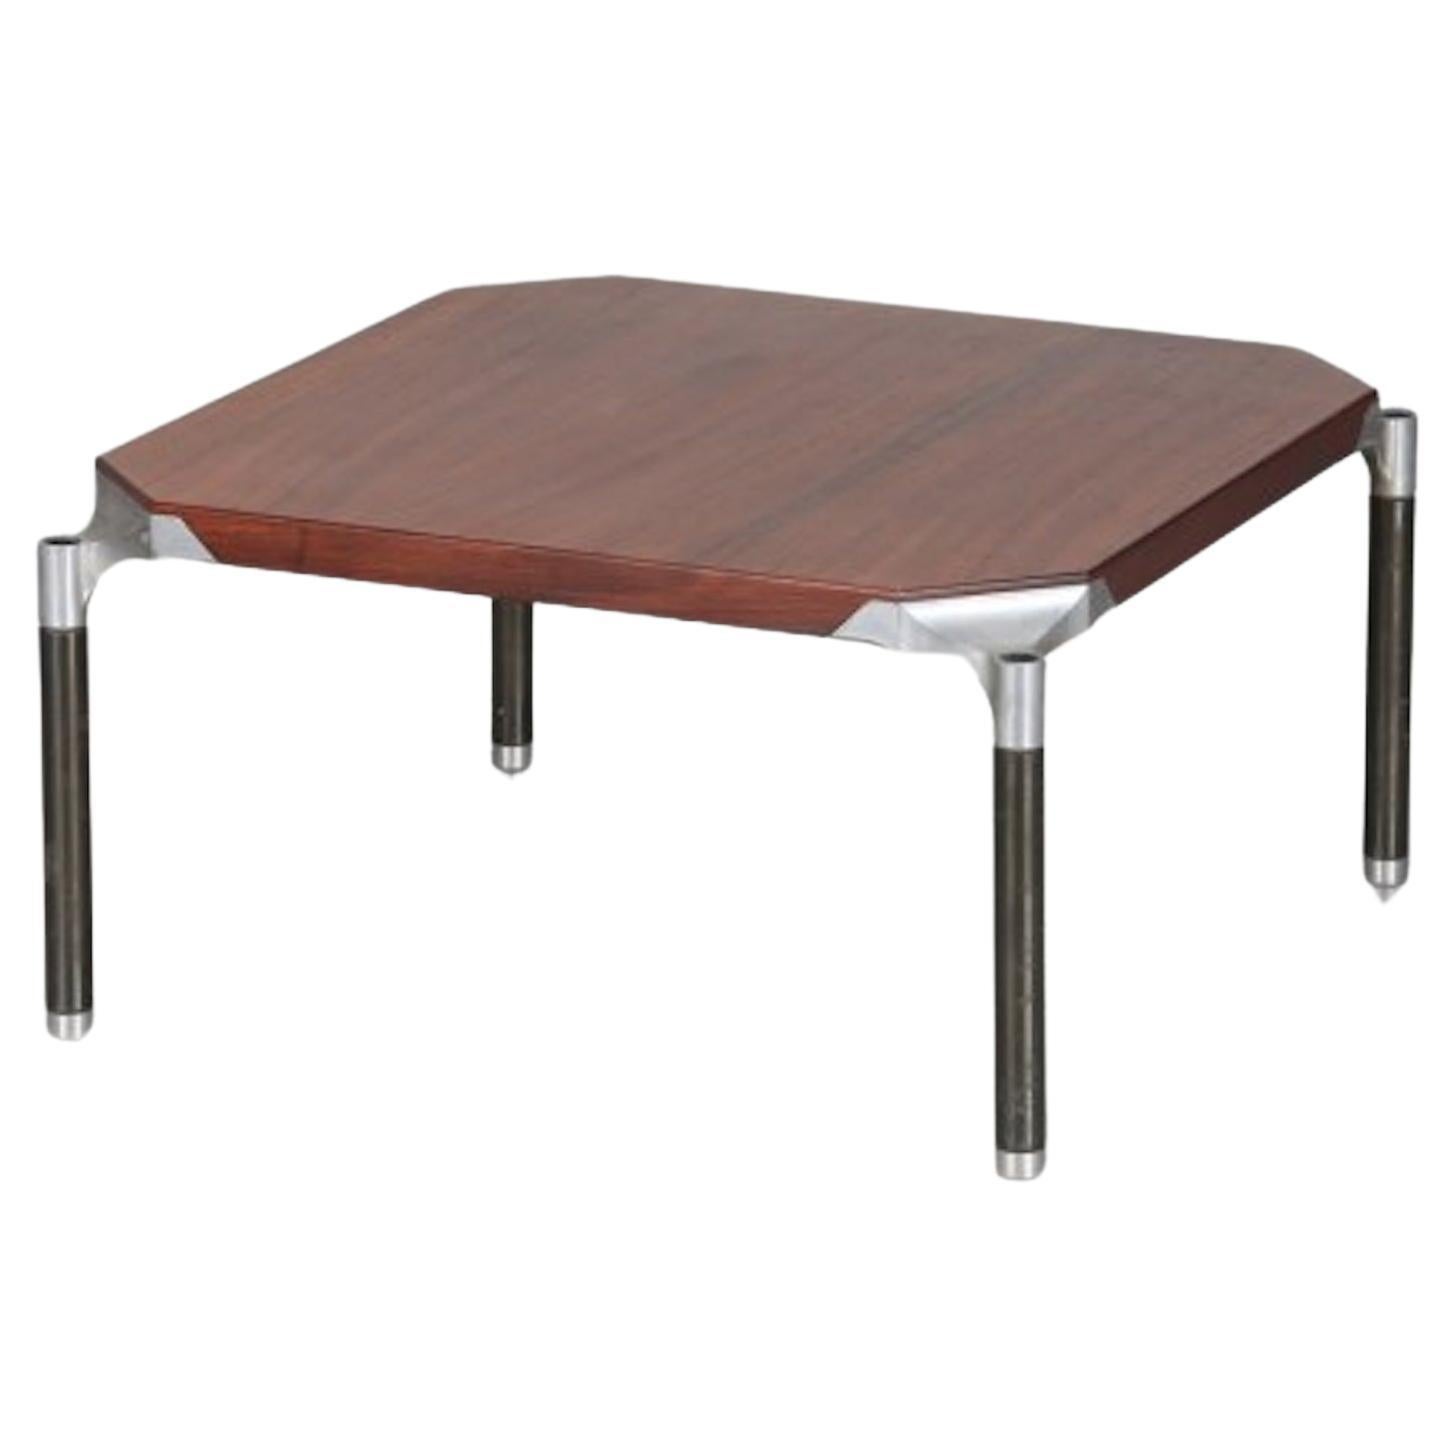 Table basse en bois et métal d'Ico Parisi pour MIM, Rome, (deux disponibles)